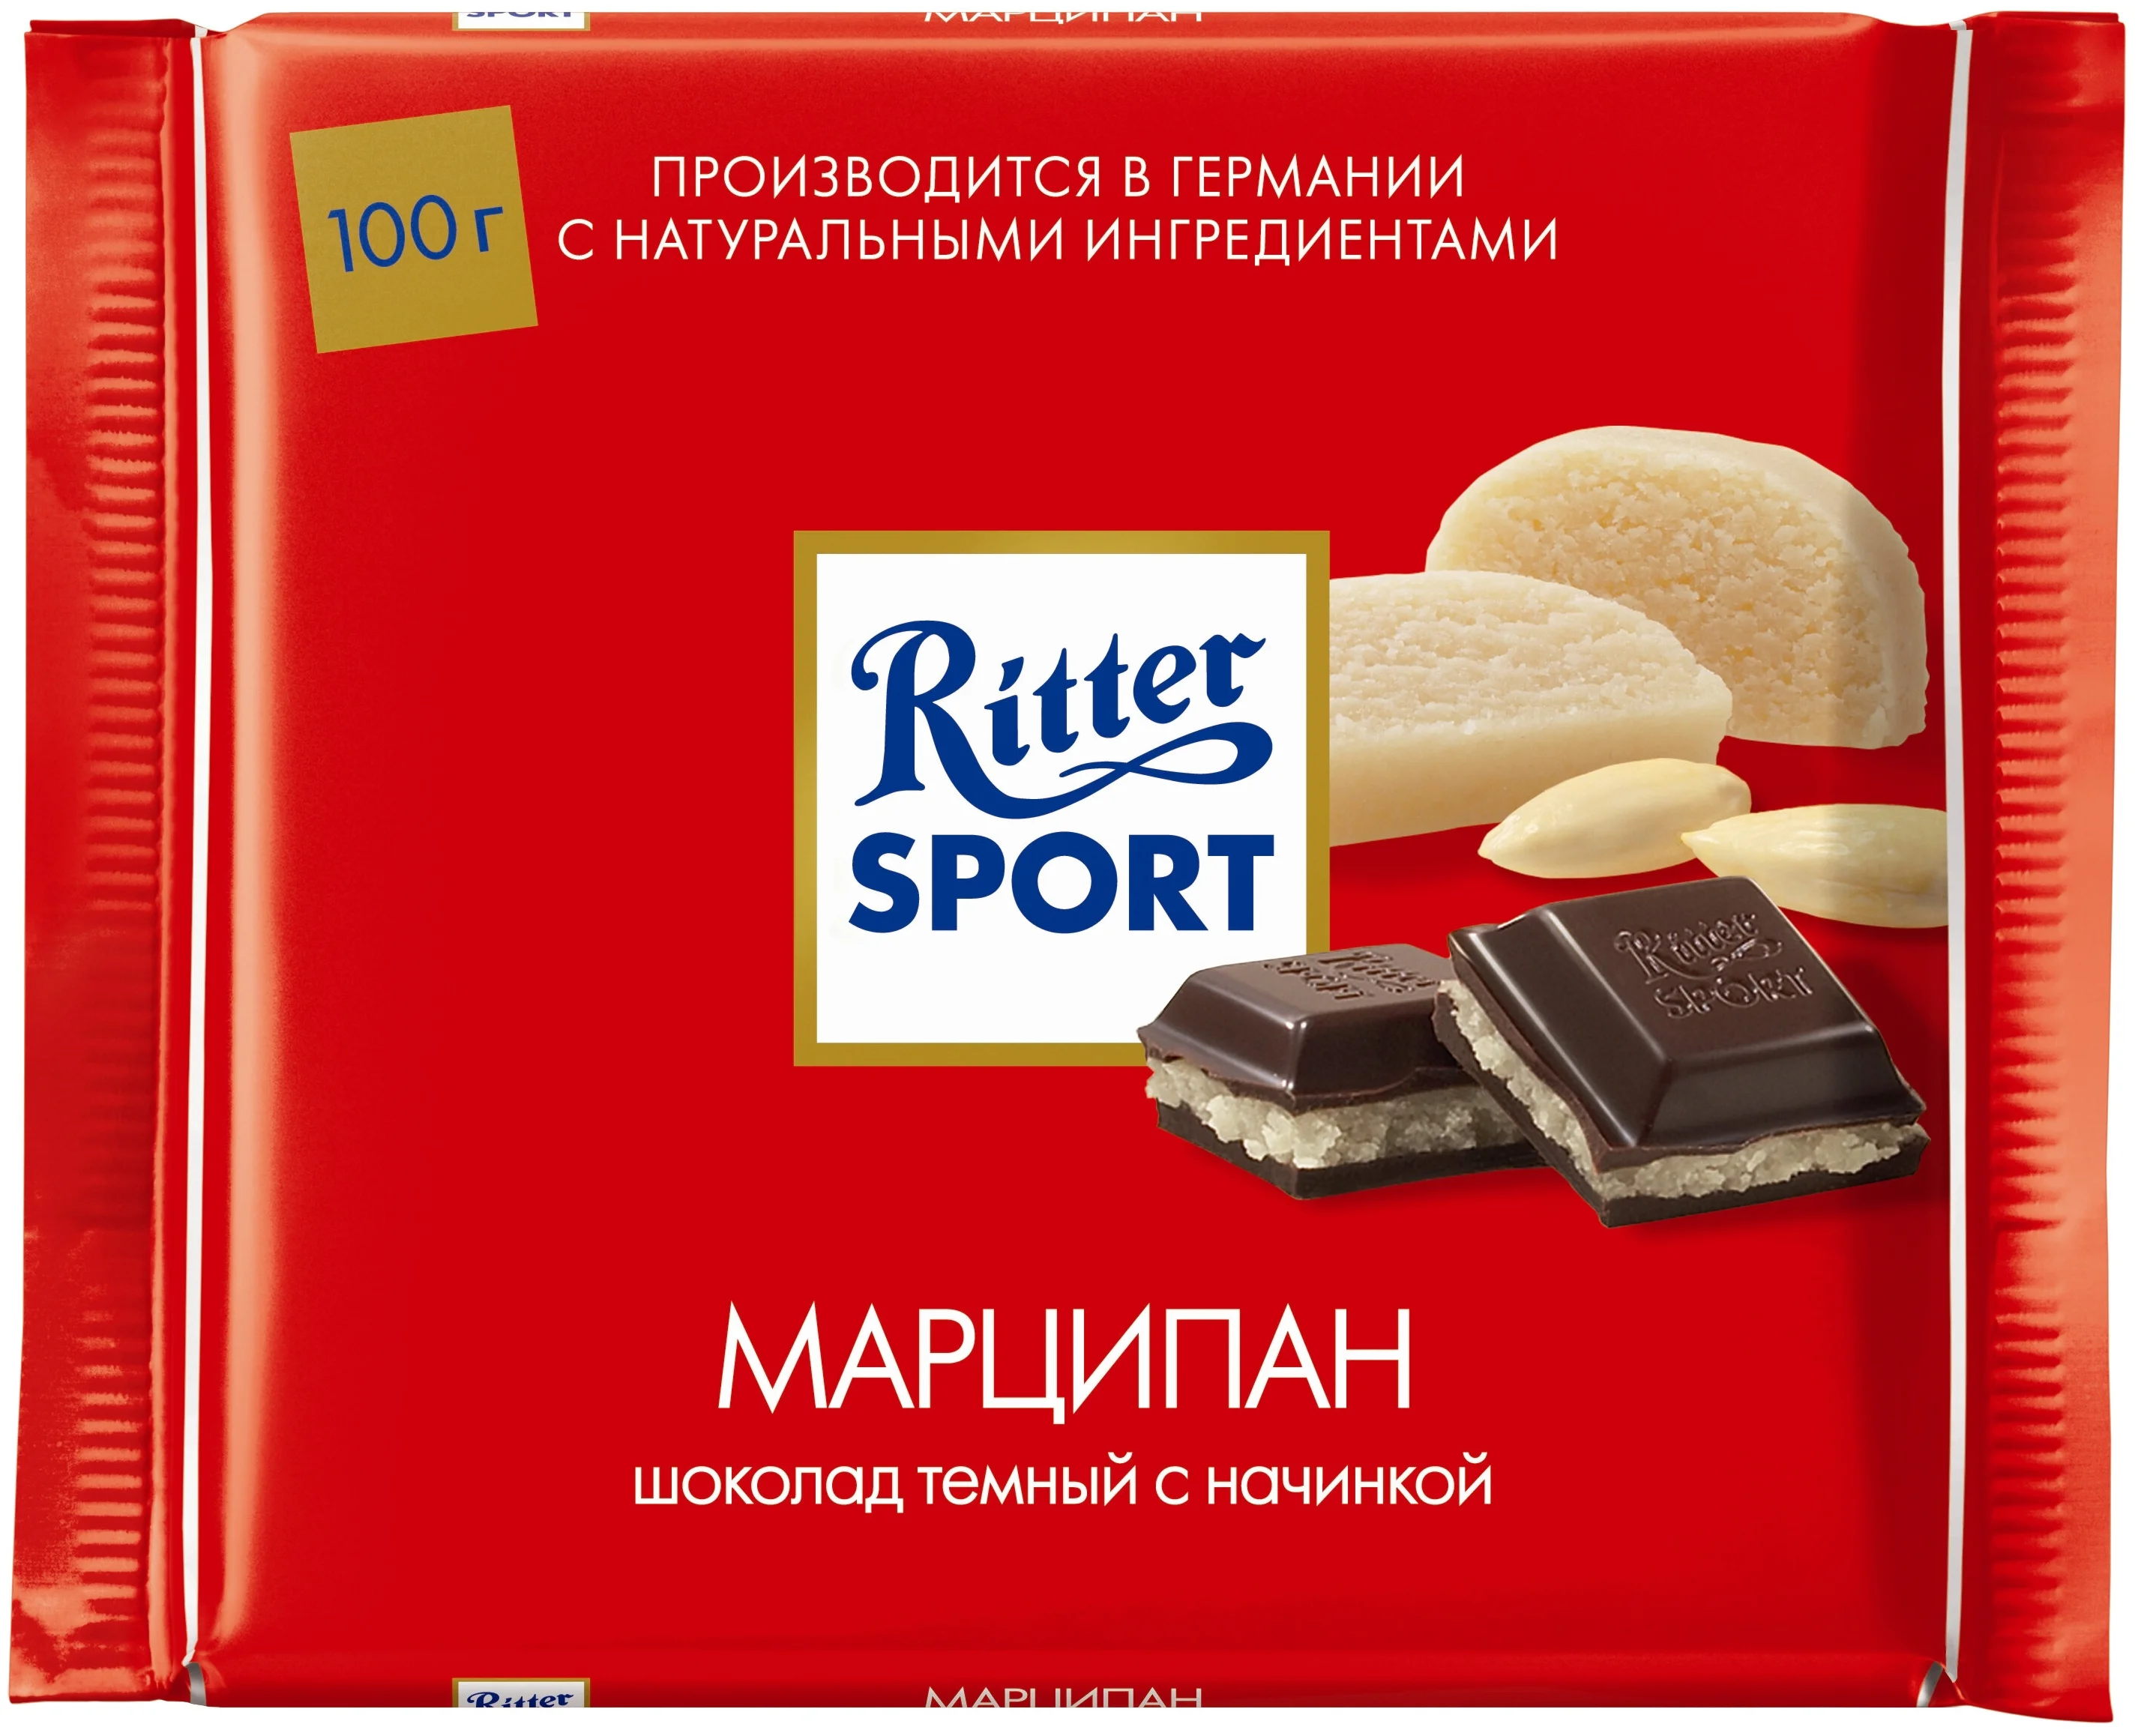 Ritter Sport "Марципан" - содержание какао: 50 %